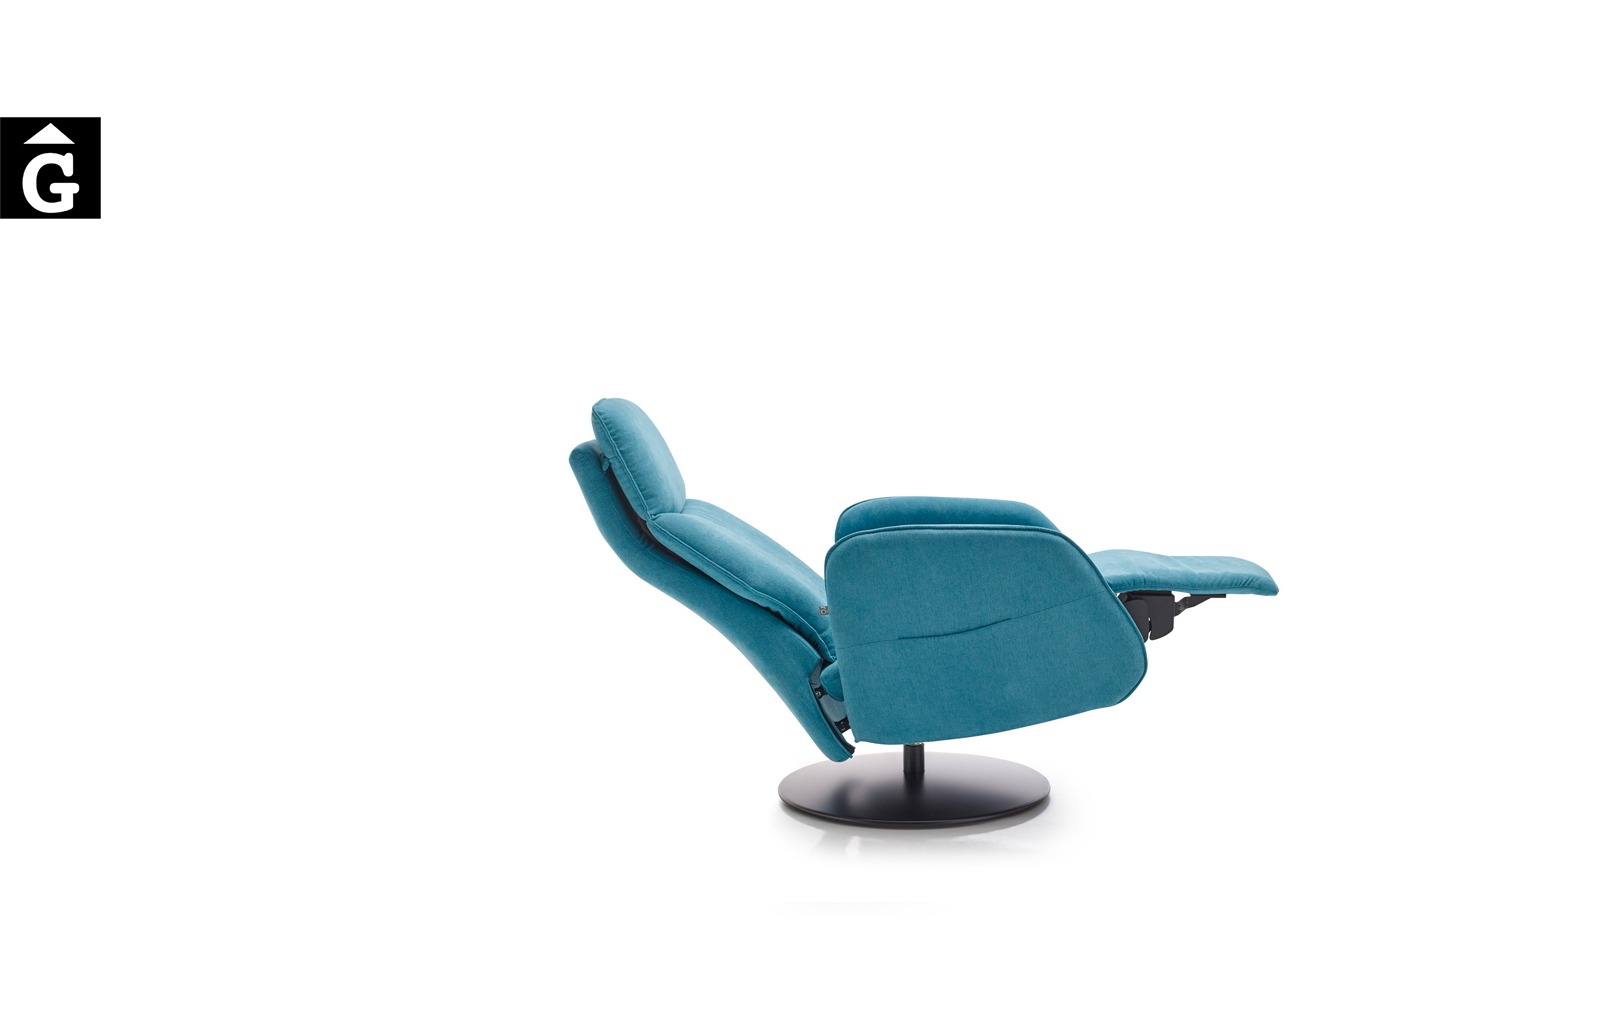 Butaca relax Panda peu central disc | Posició horitzontal | Mecanisme obert | Reyes Ordoñez Sofas disseny i qualitat alta distribuïdor oficial mobles Gifreu